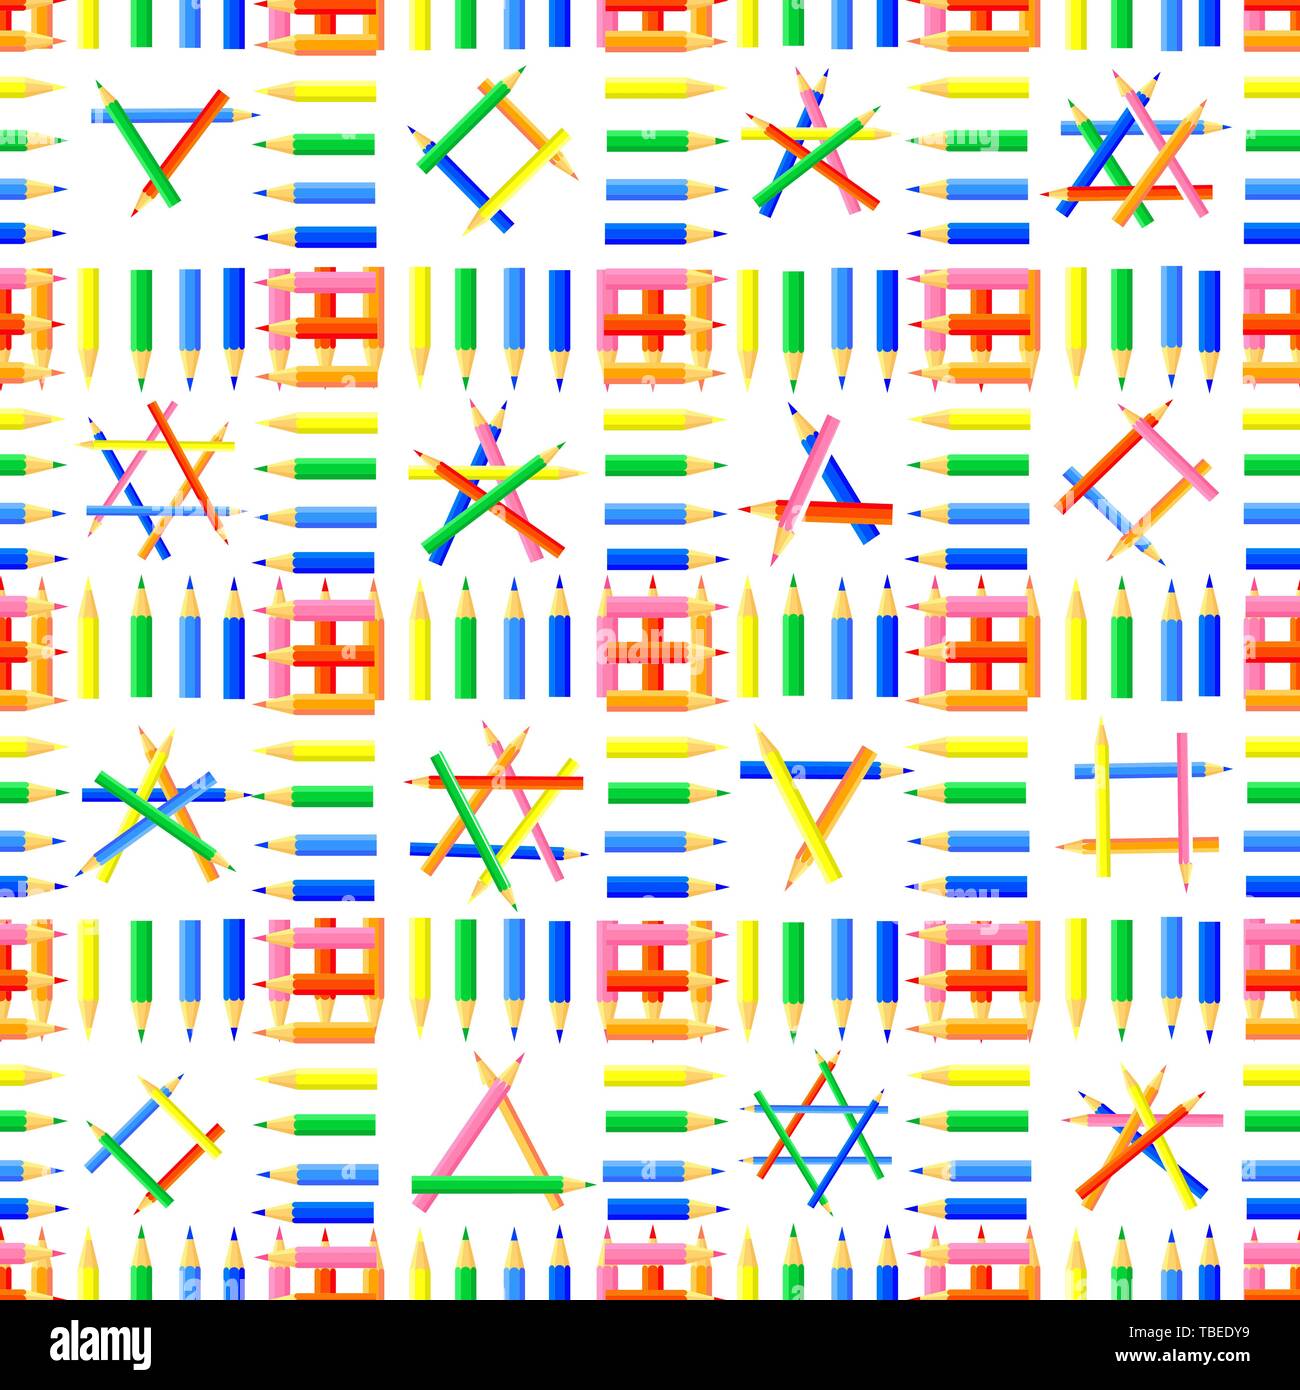 Vector seamless pattern.righe di matite colorate, formando delle piazze e forme diverse in queste piazze.sito di sfondo per gli artisti,tessuti, bambini. Illustrazione Vettoriale